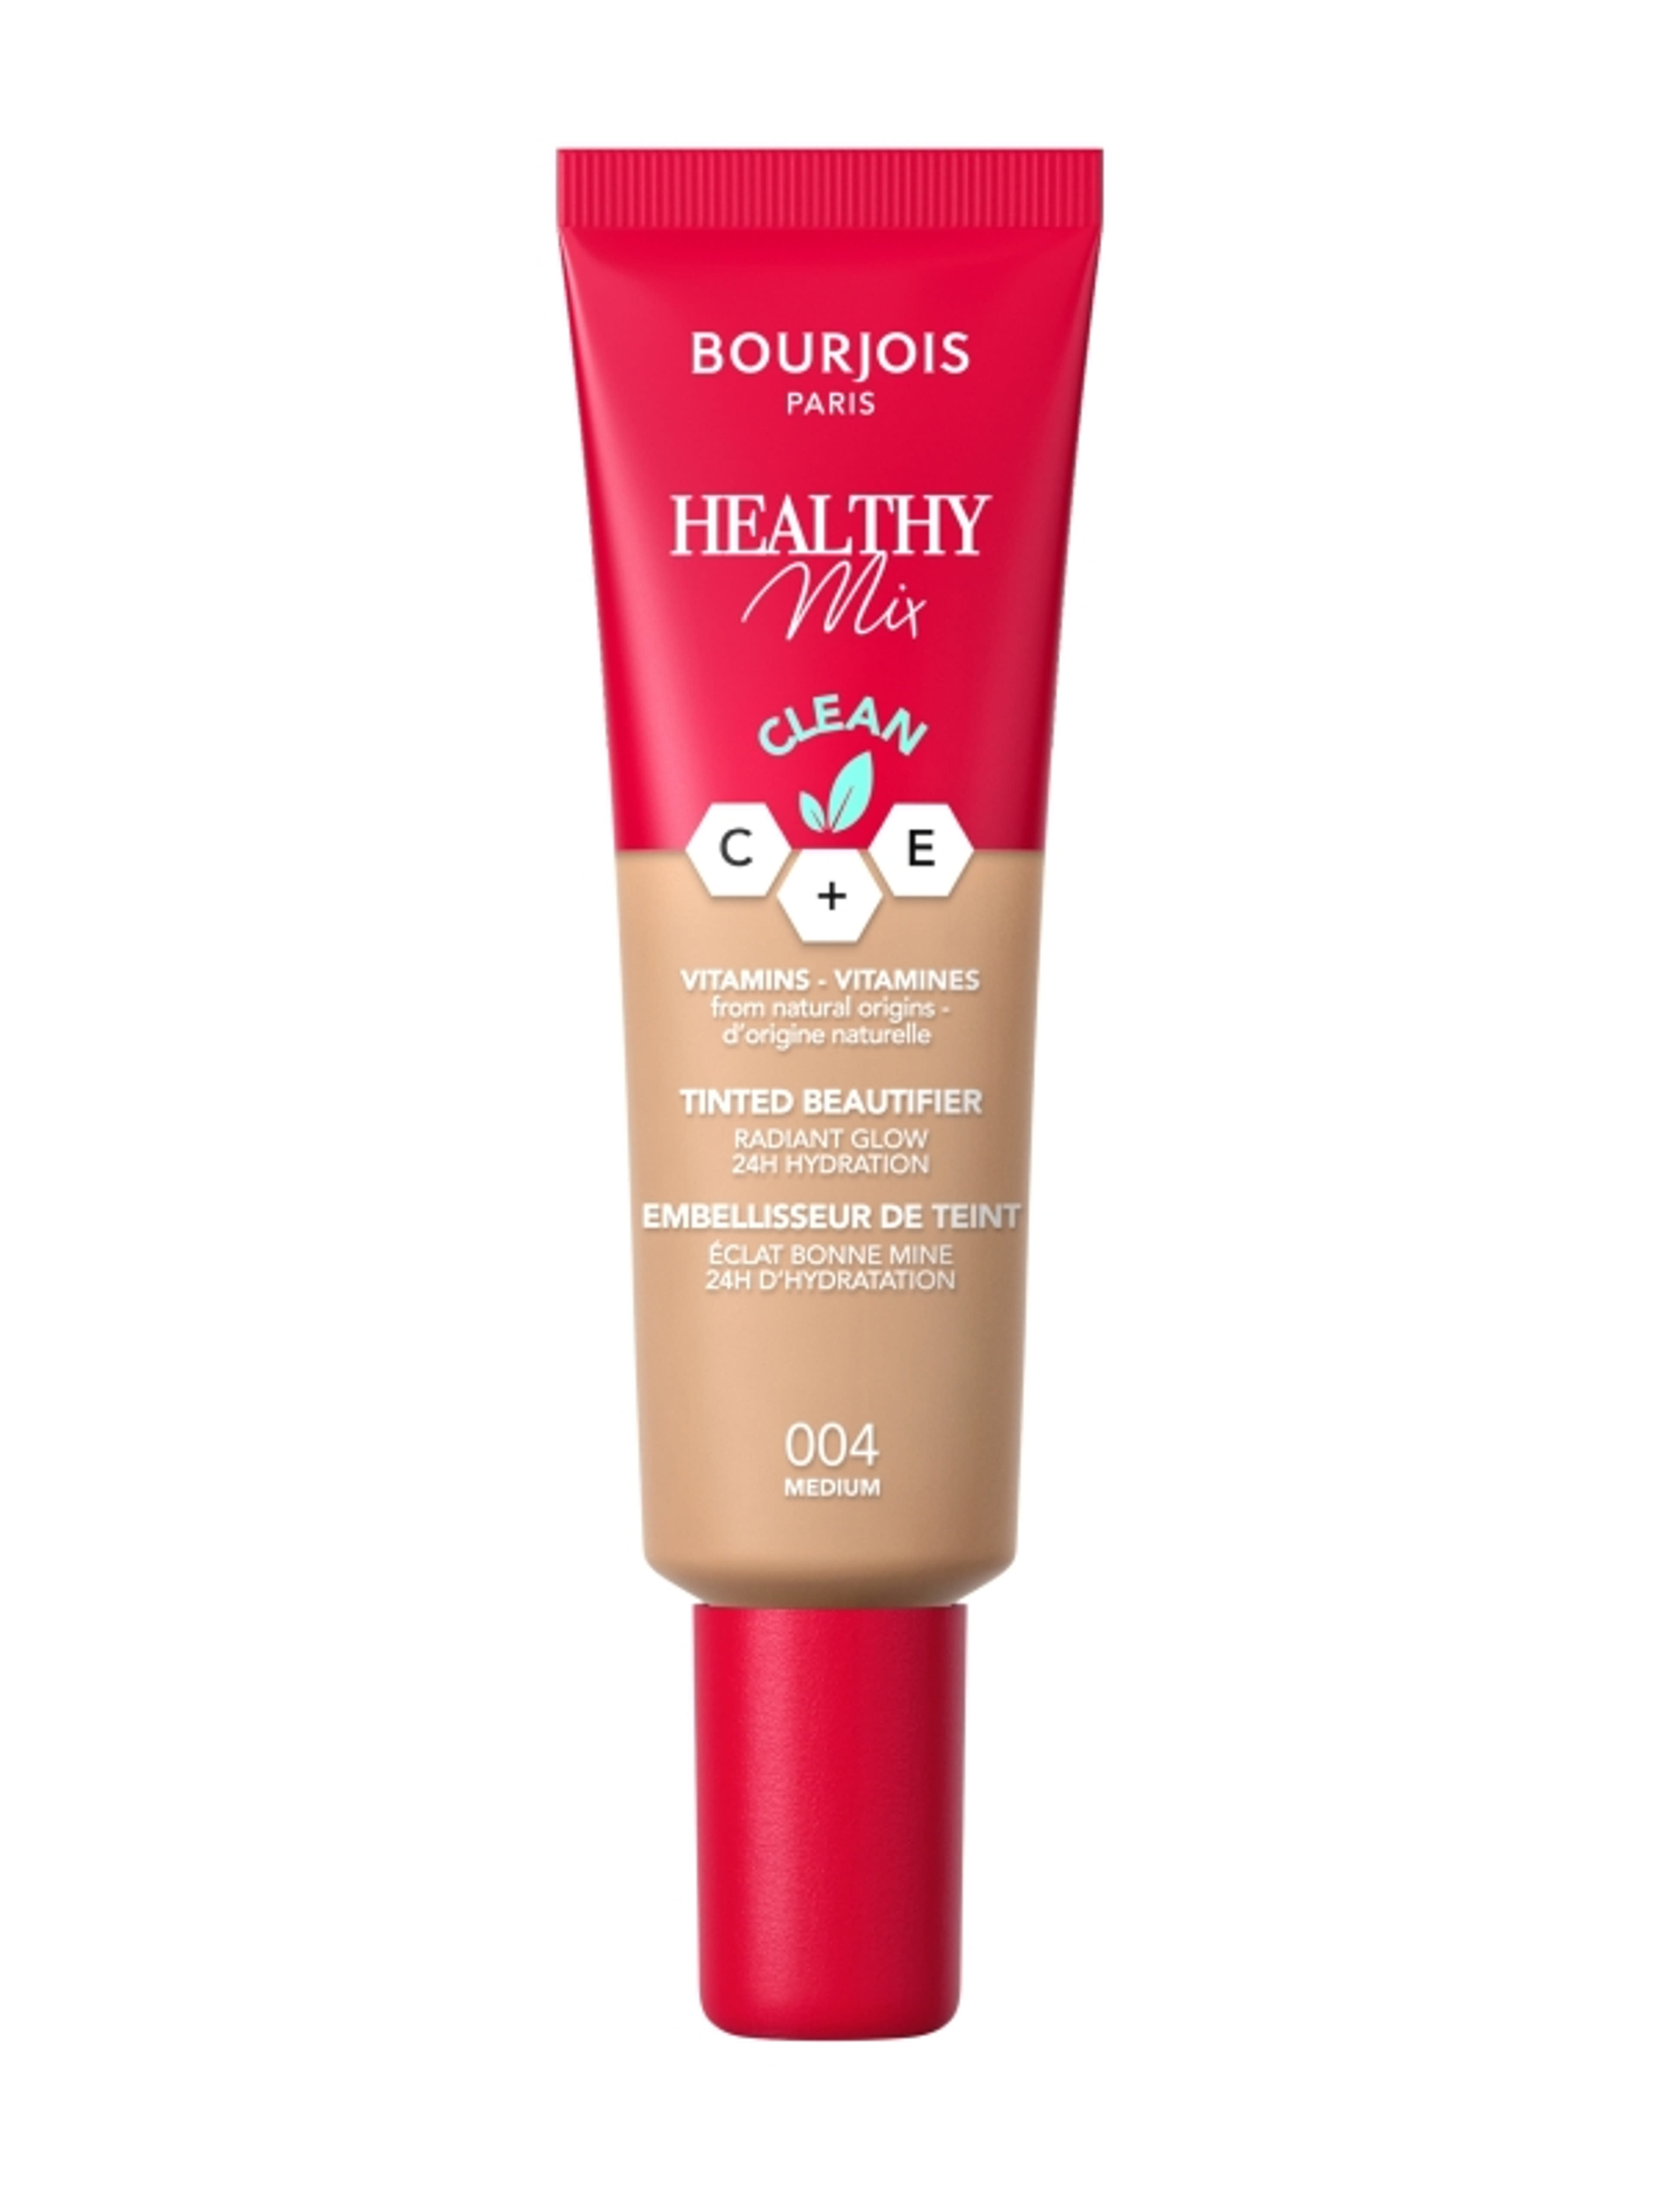 Bourjois Healthy Mix színezett arckrém /004 - 1 db